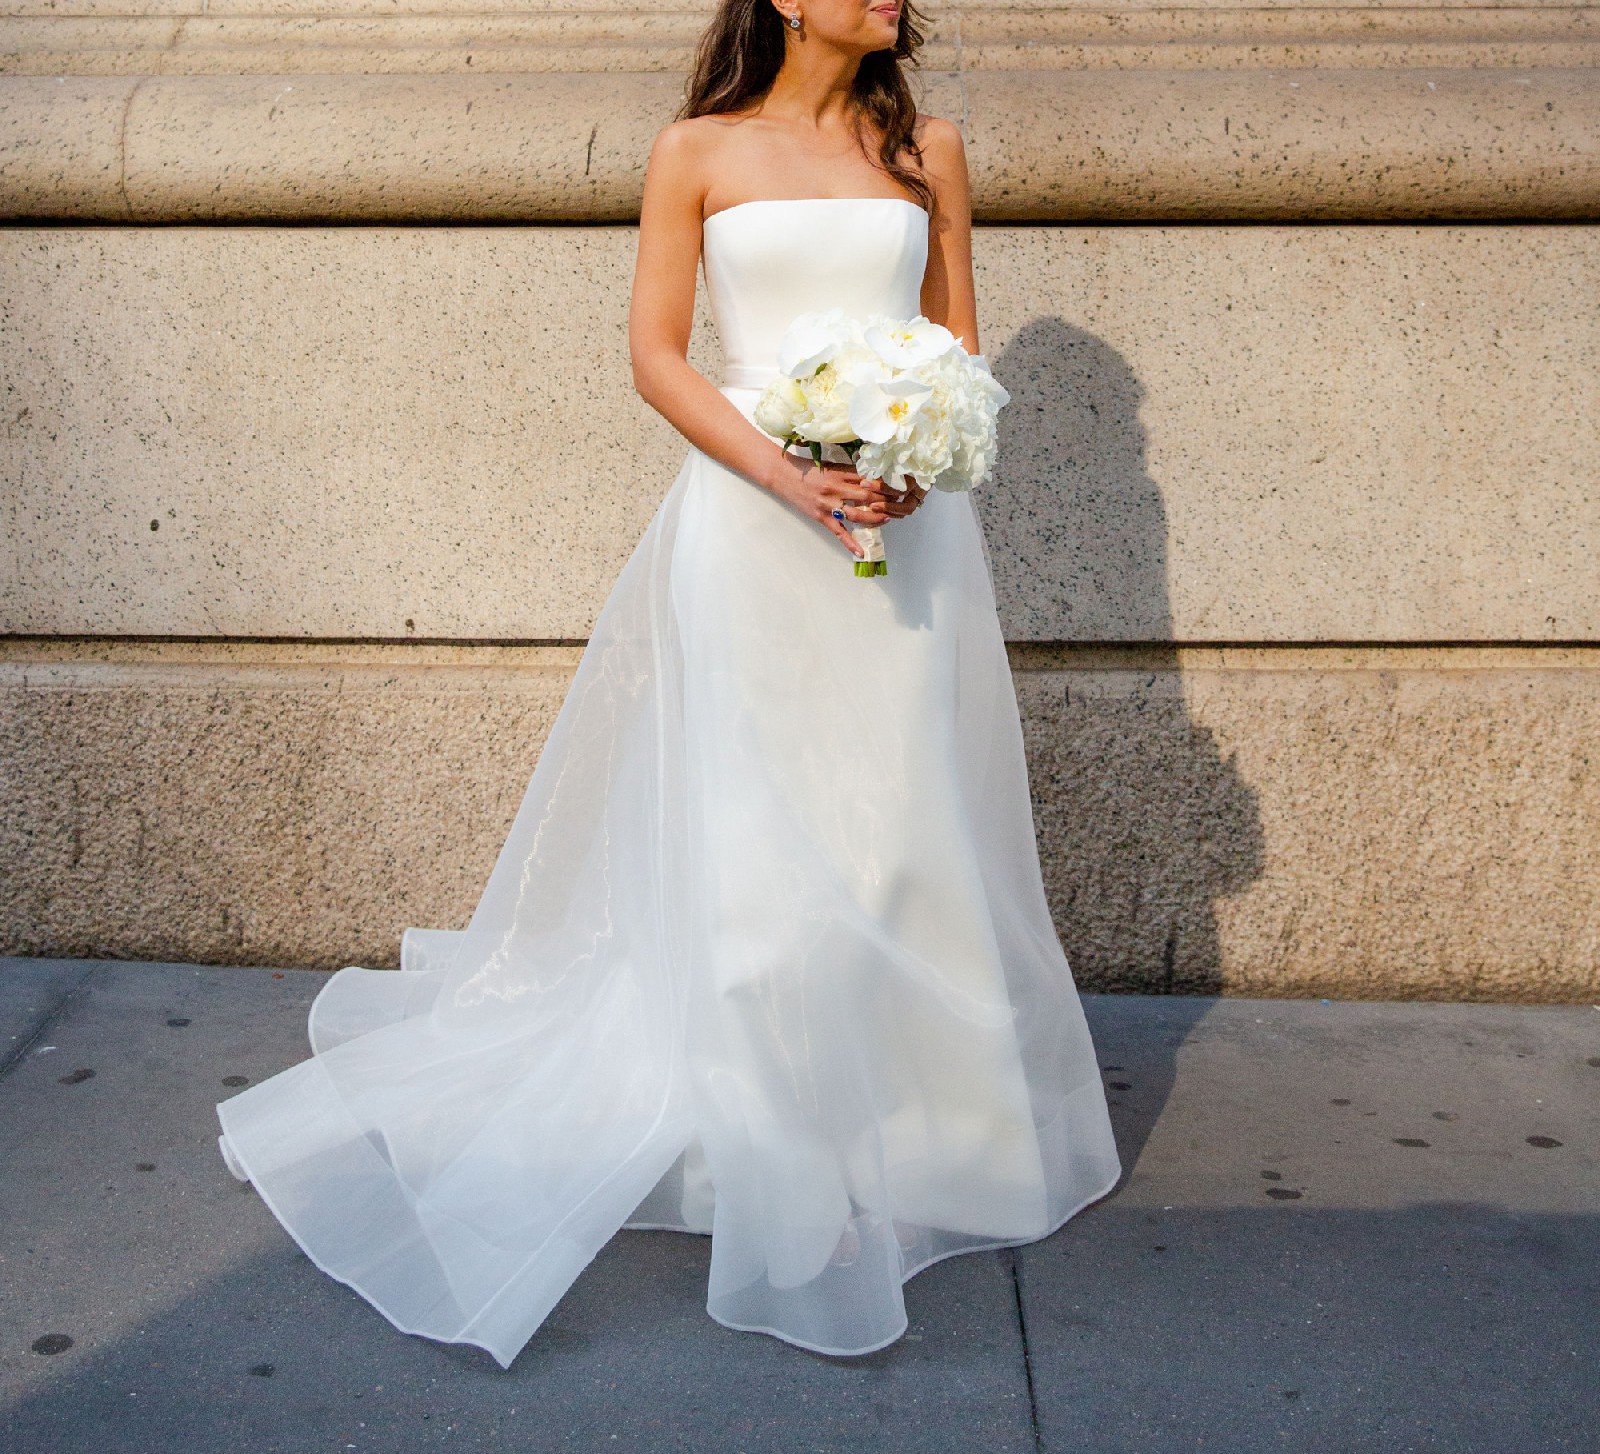 Romona Keveza 100% Silk Wedding Dress - 2002 - CA35865 with double